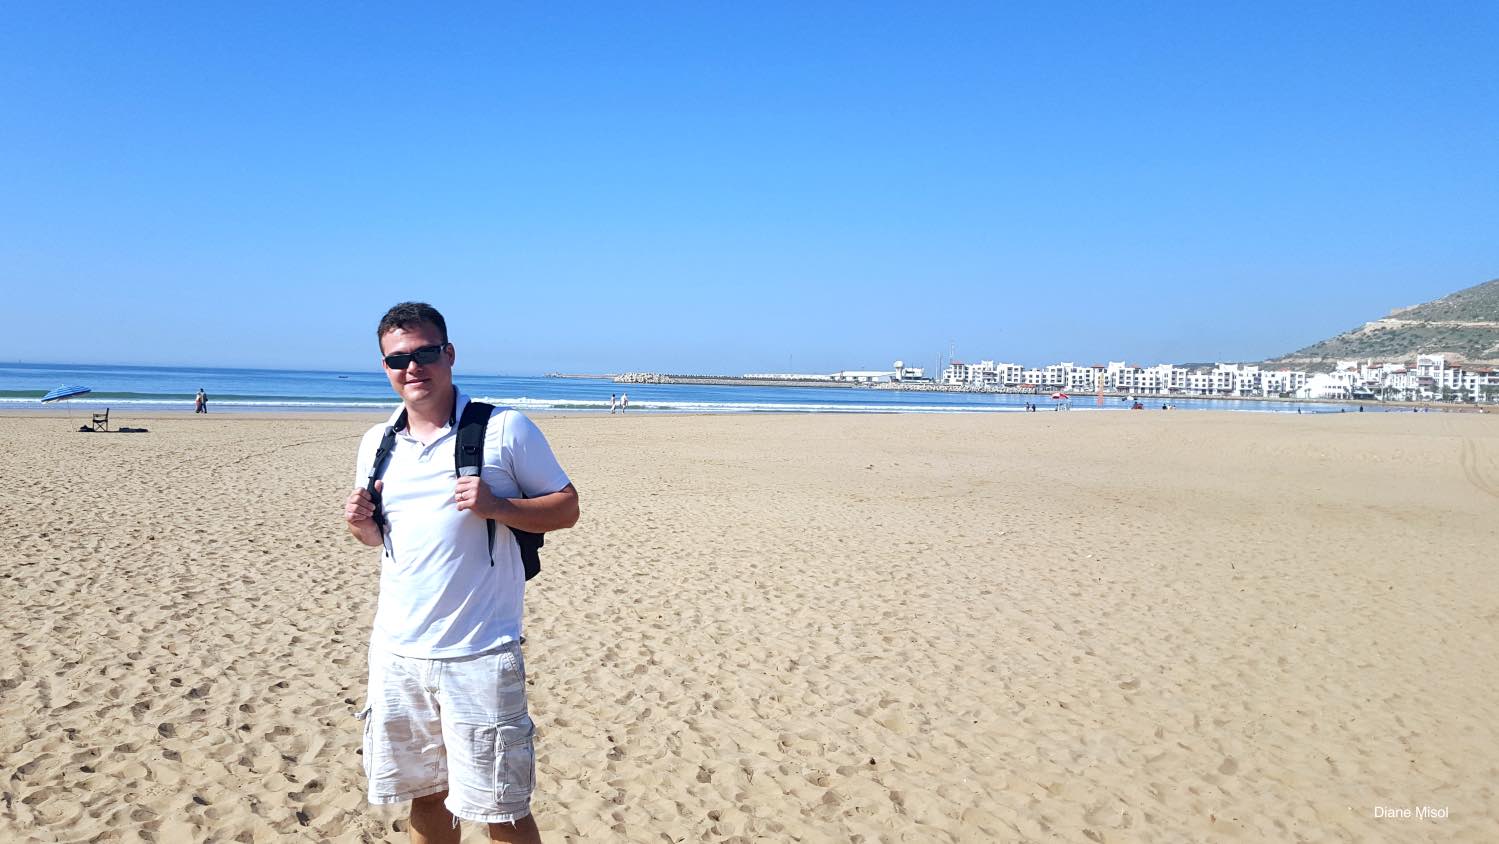 Tourist checking out Agadir Beach, Morocco